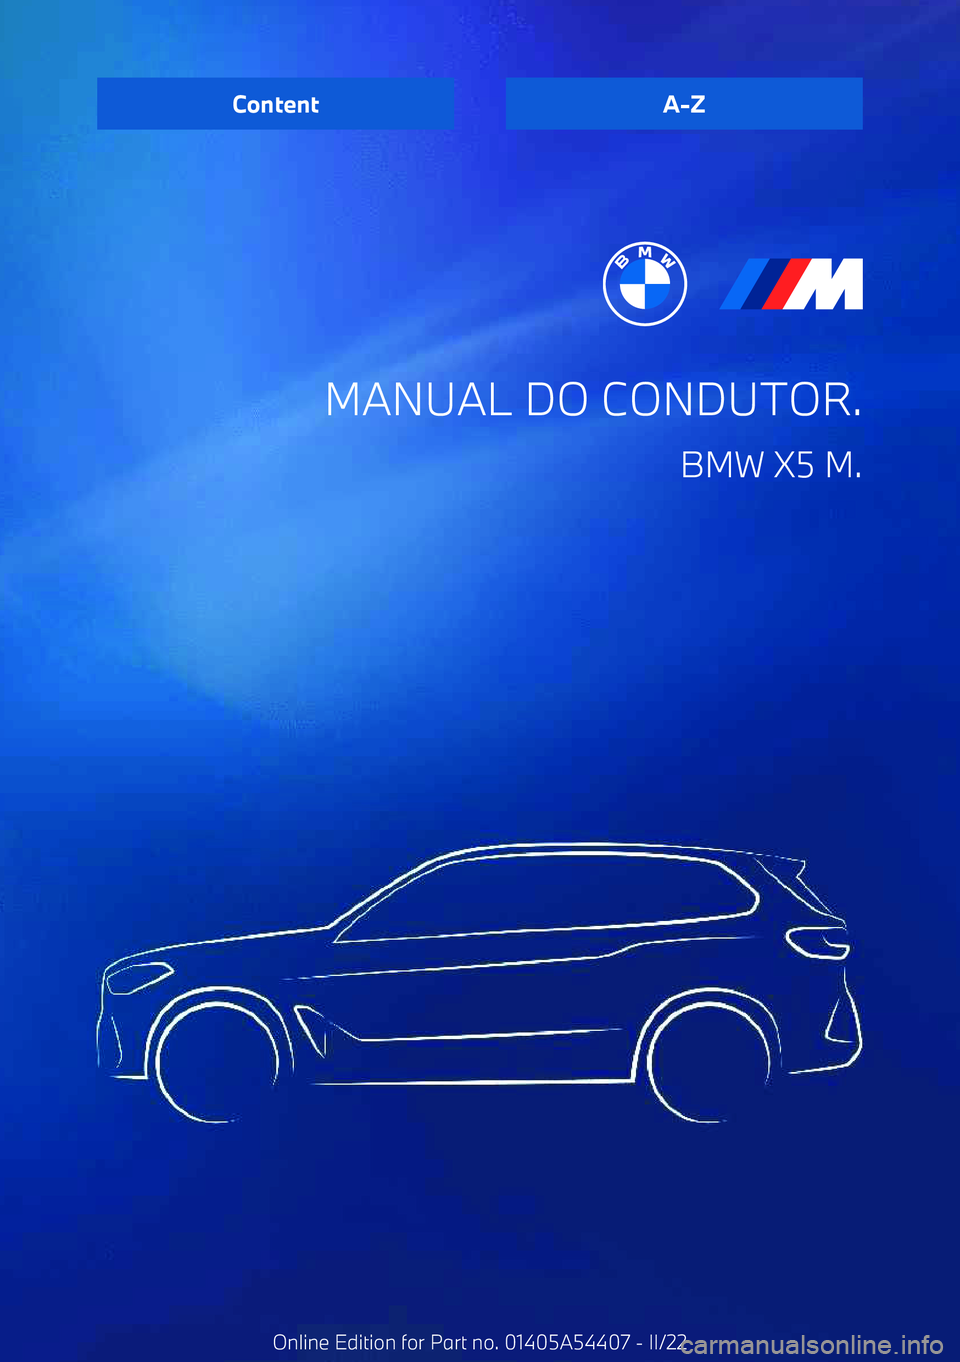 BMW X5 M 2022  Manual do condutor (in Portuguese) MANUAL DO CONDUTOR.BMW X5 M.ContentA